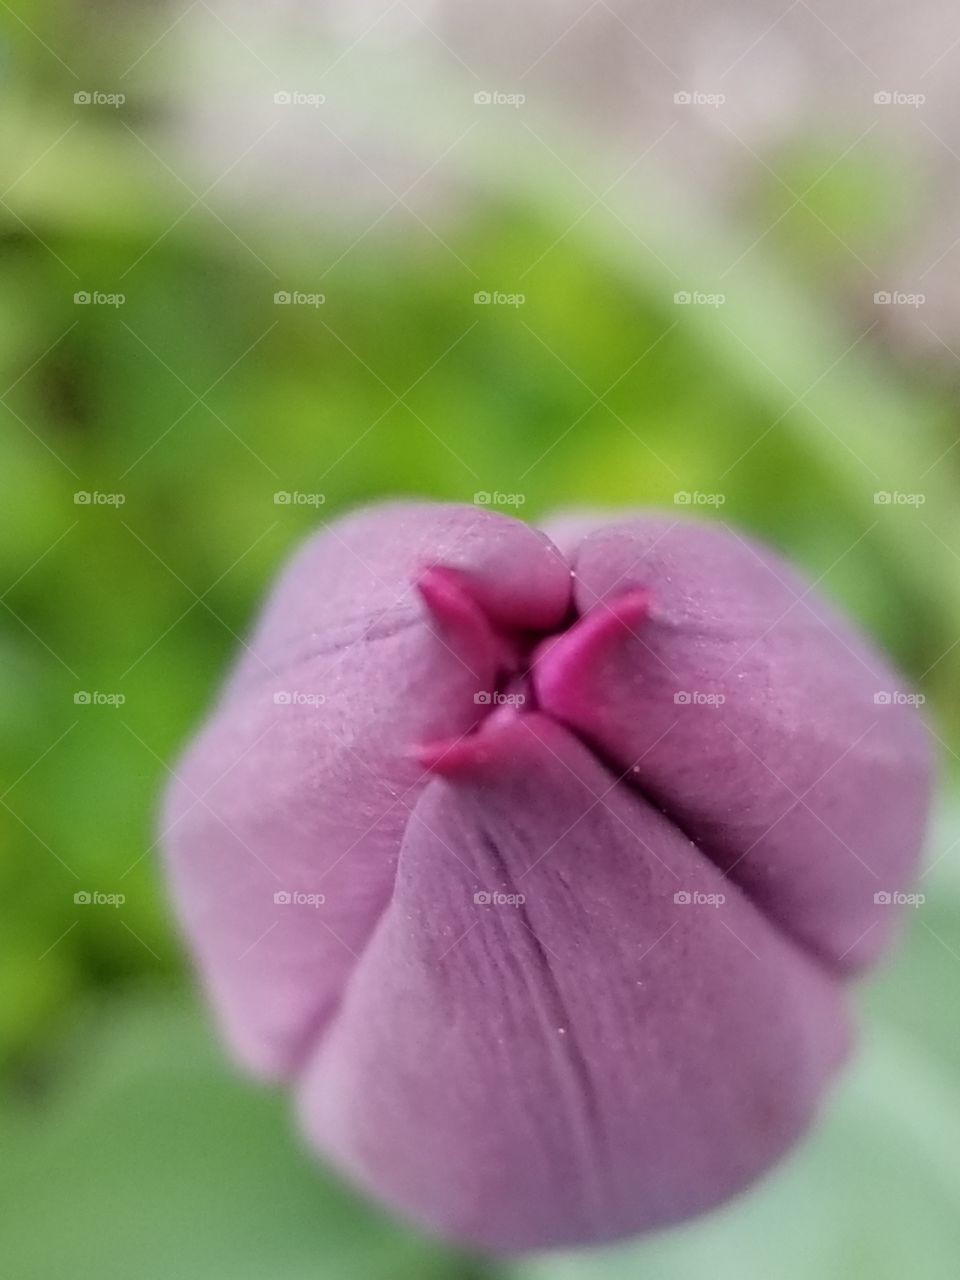 tulip kiss